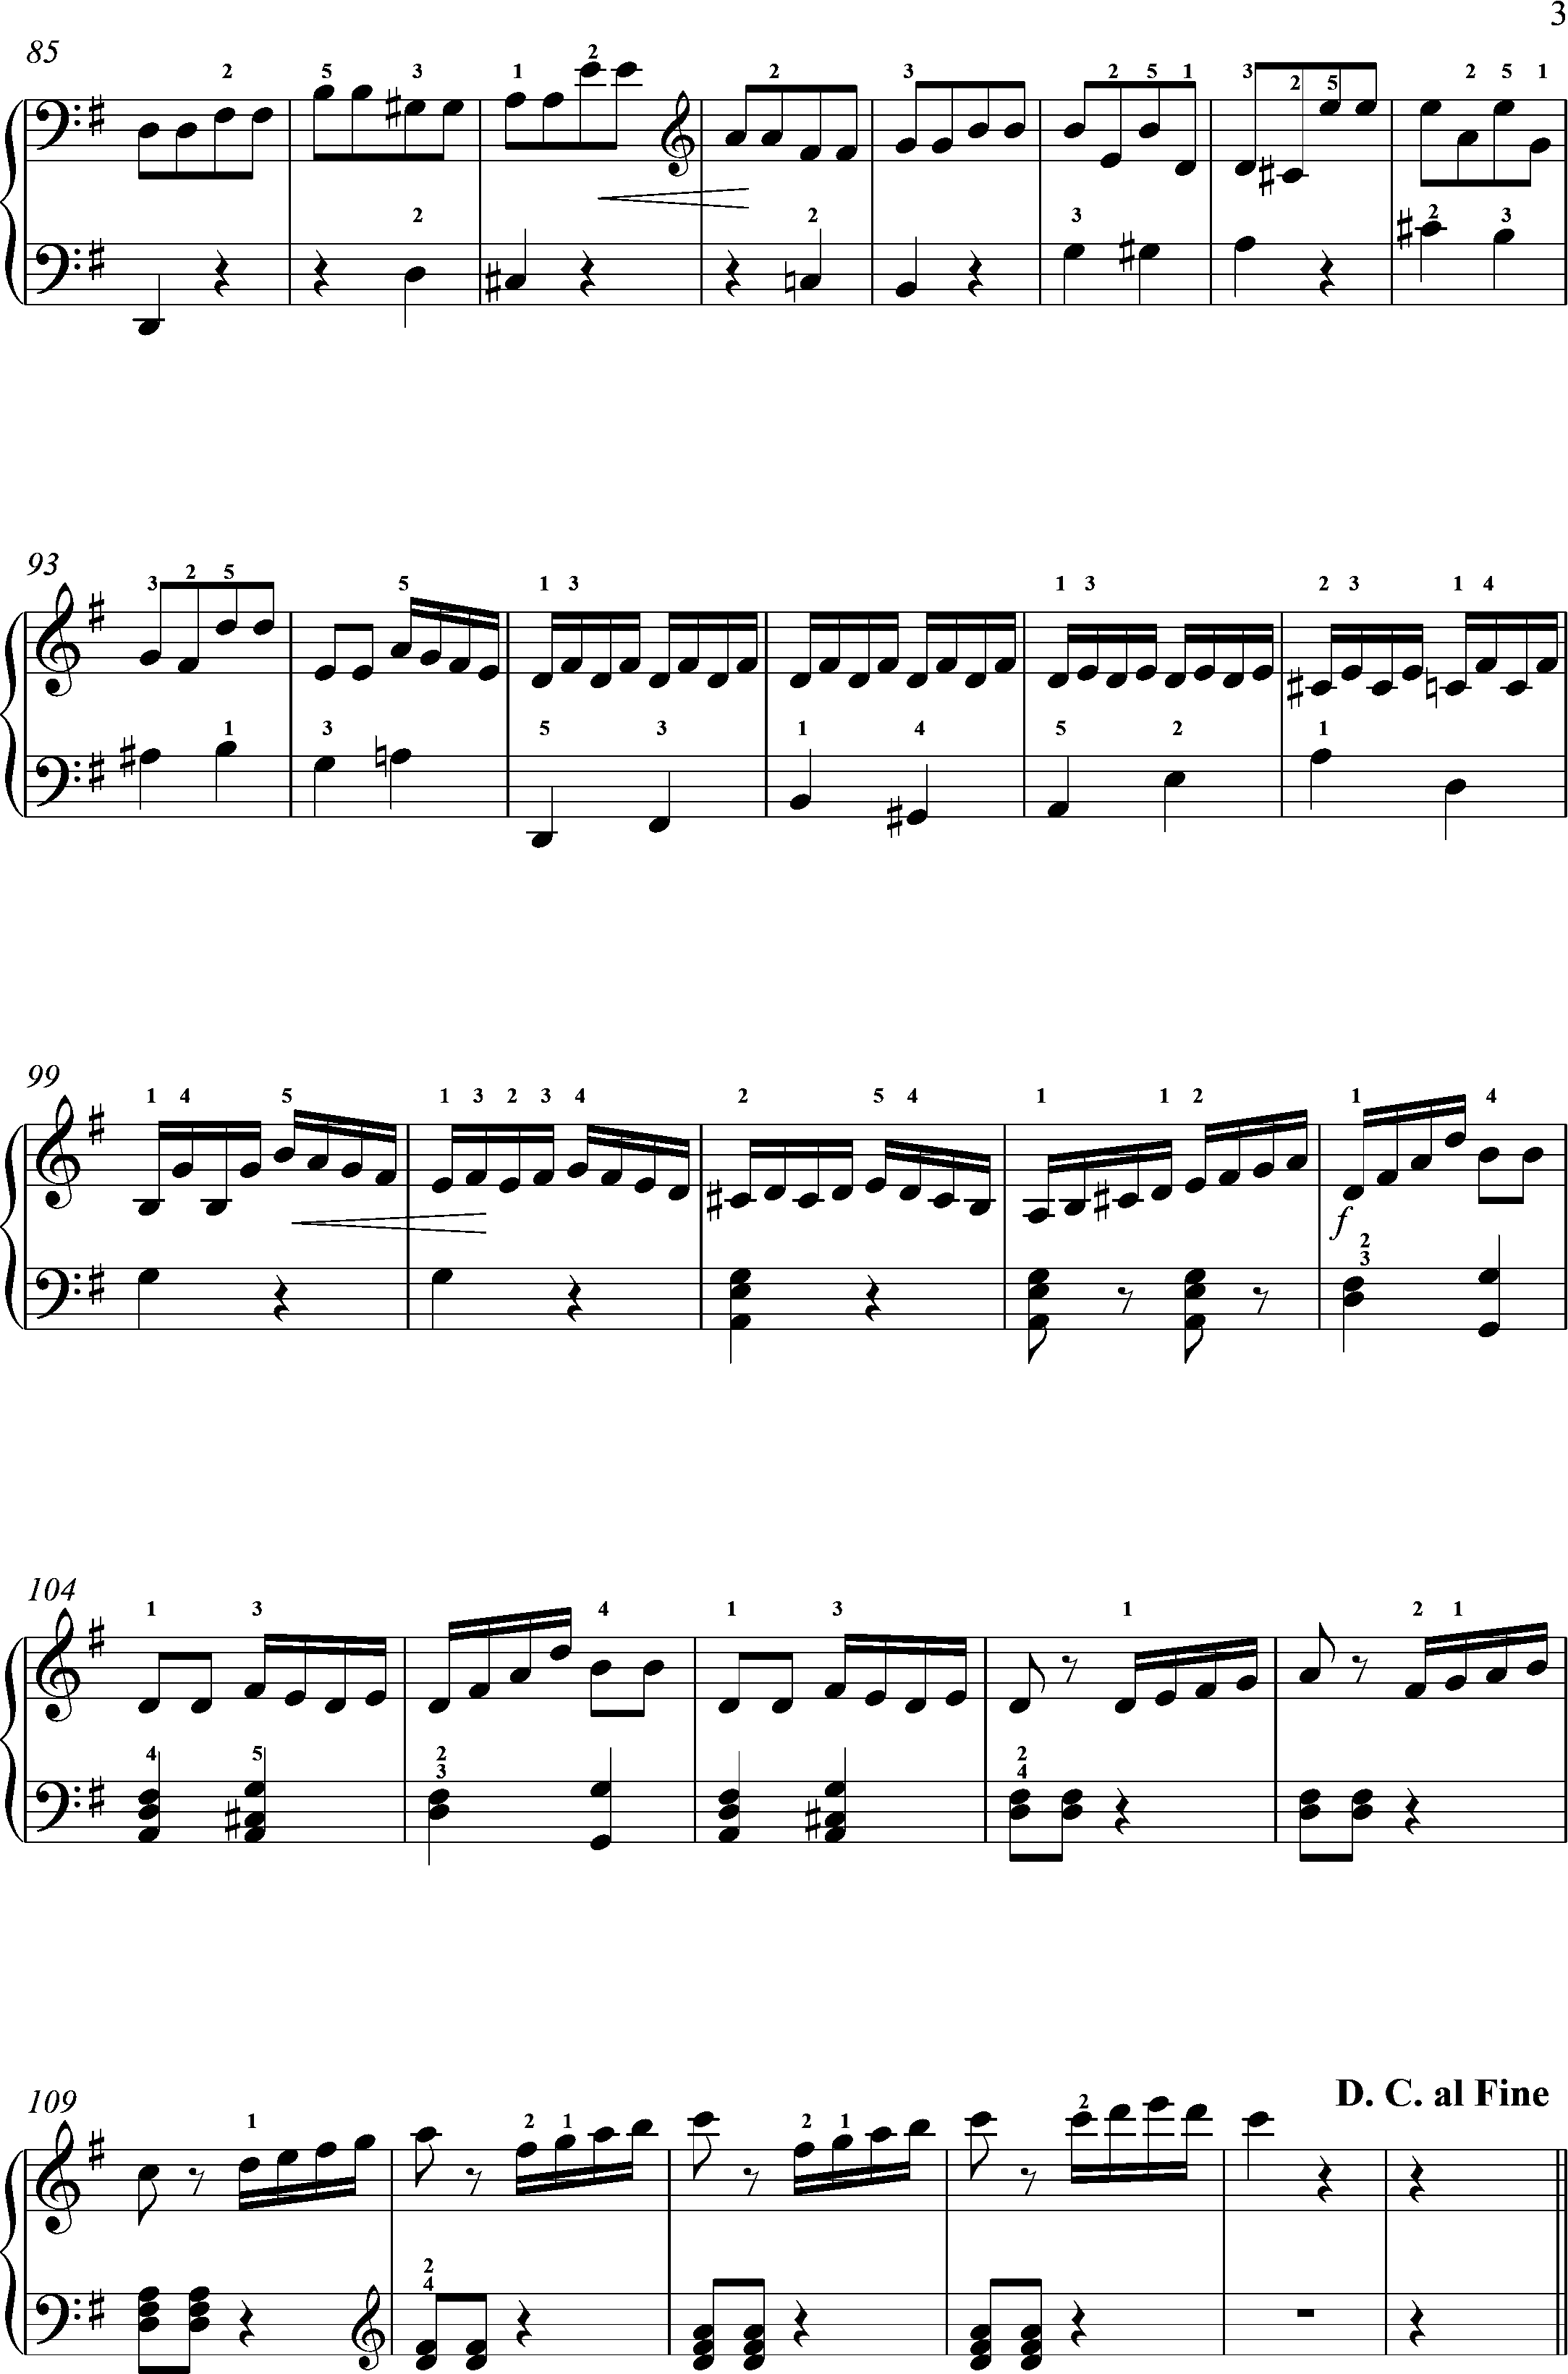 Clementi, op. 36Sonate 5--3.Satz- Rondo - Allegro molto, Seite 3